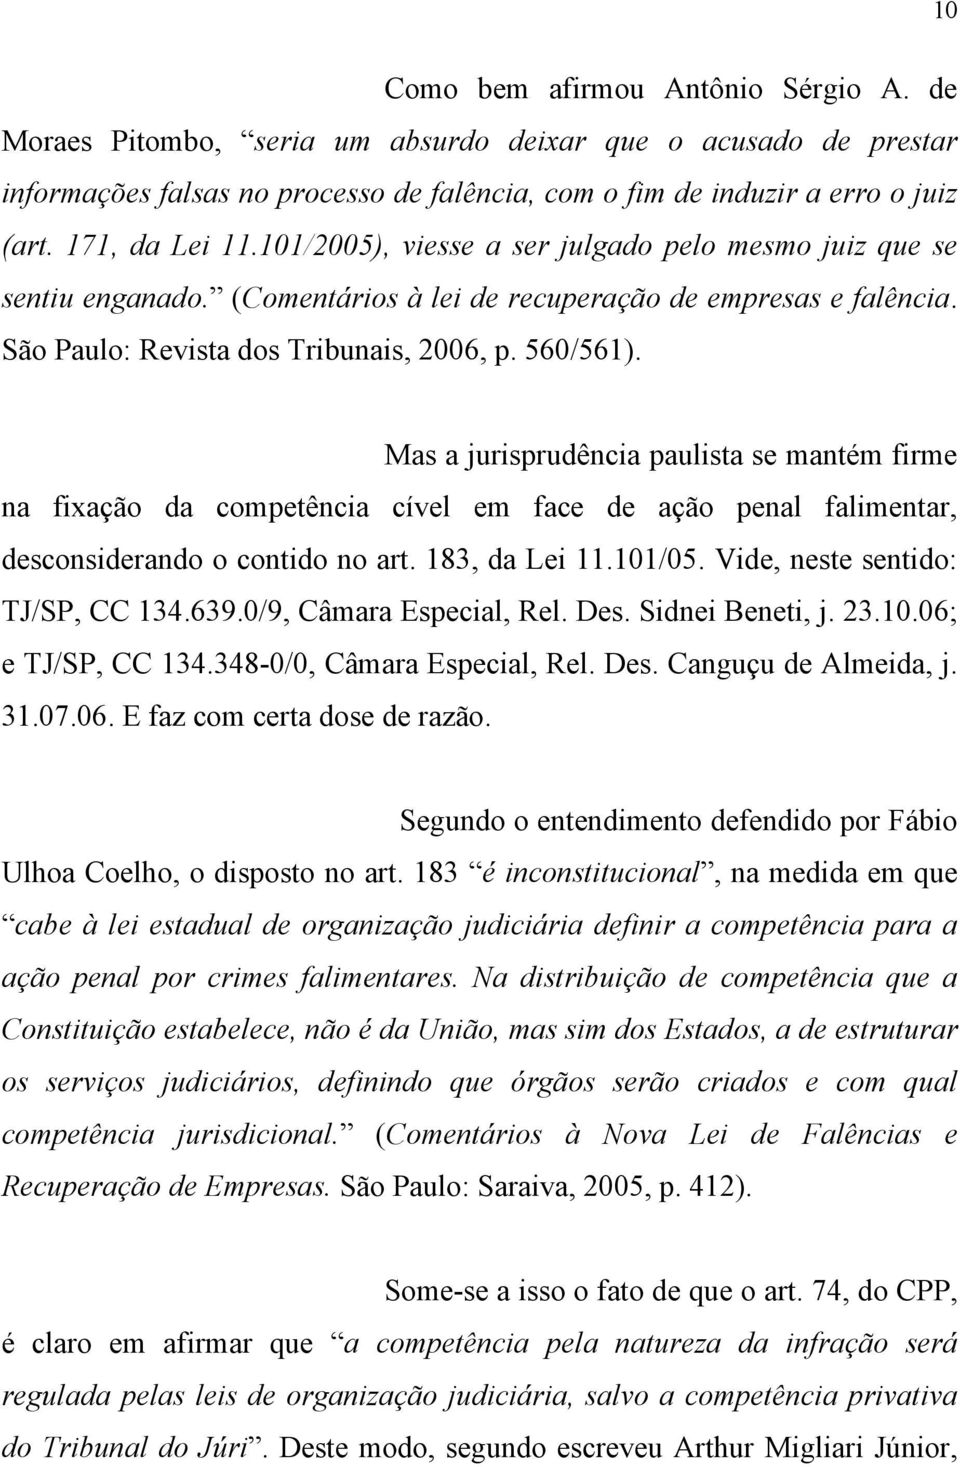 Mas a jurisprudência paulista se mantém firme na fixação da competência cível em face de ação penal falimentar, desconsiderando o contido no art. 183, da Lei 11.101/05.